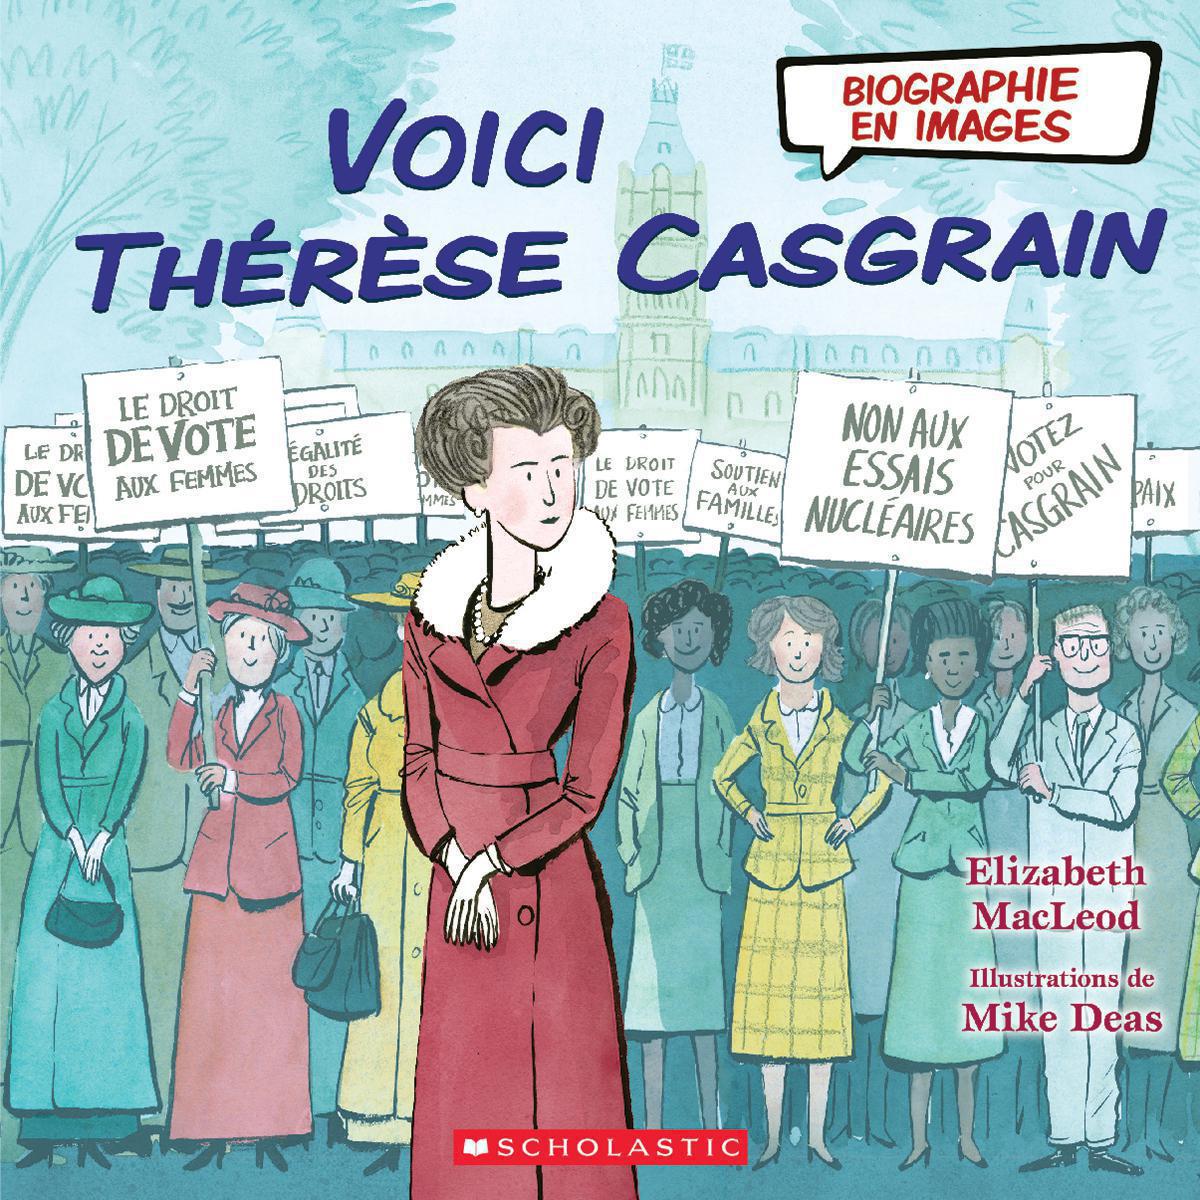  Biographie en images : Voici Thérèse Casgrain 